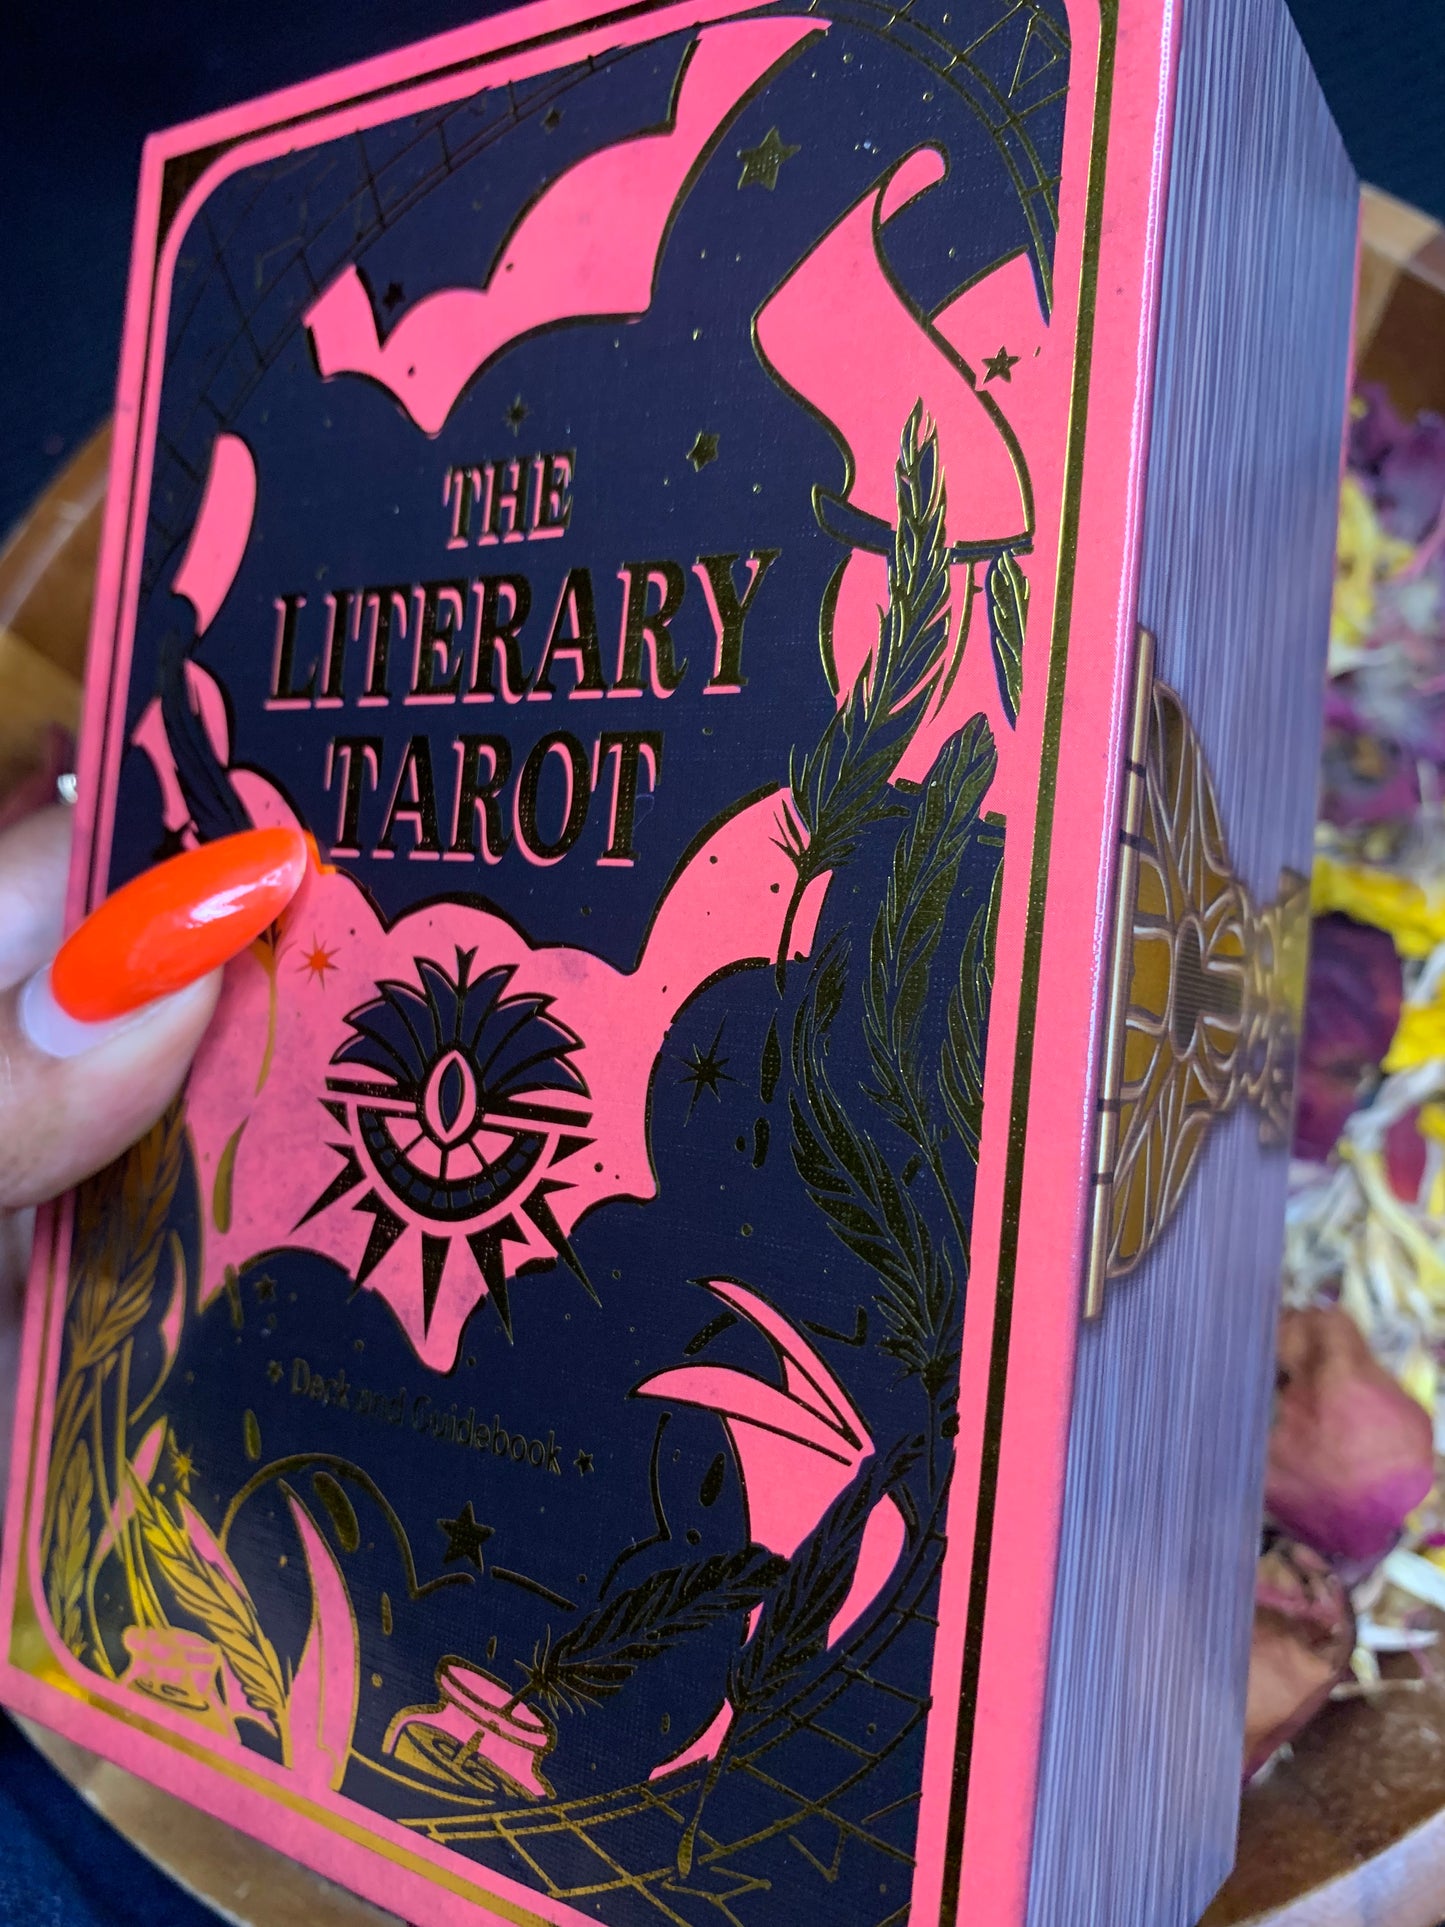 The Literary Tarot